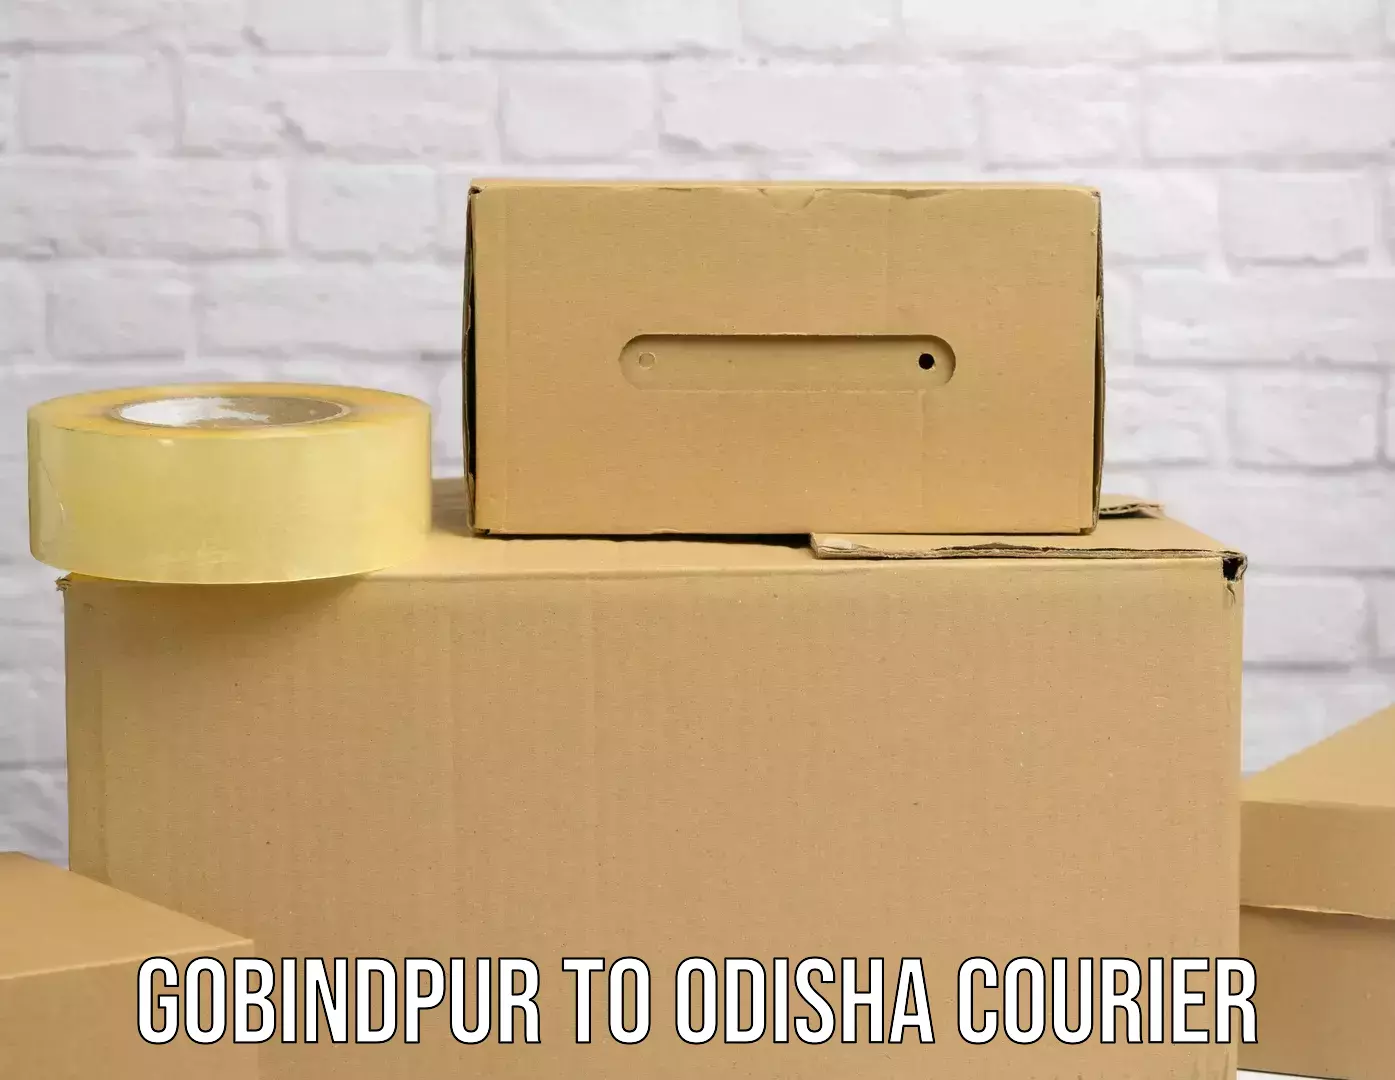 Full-service courier options Gobindpur to Konark